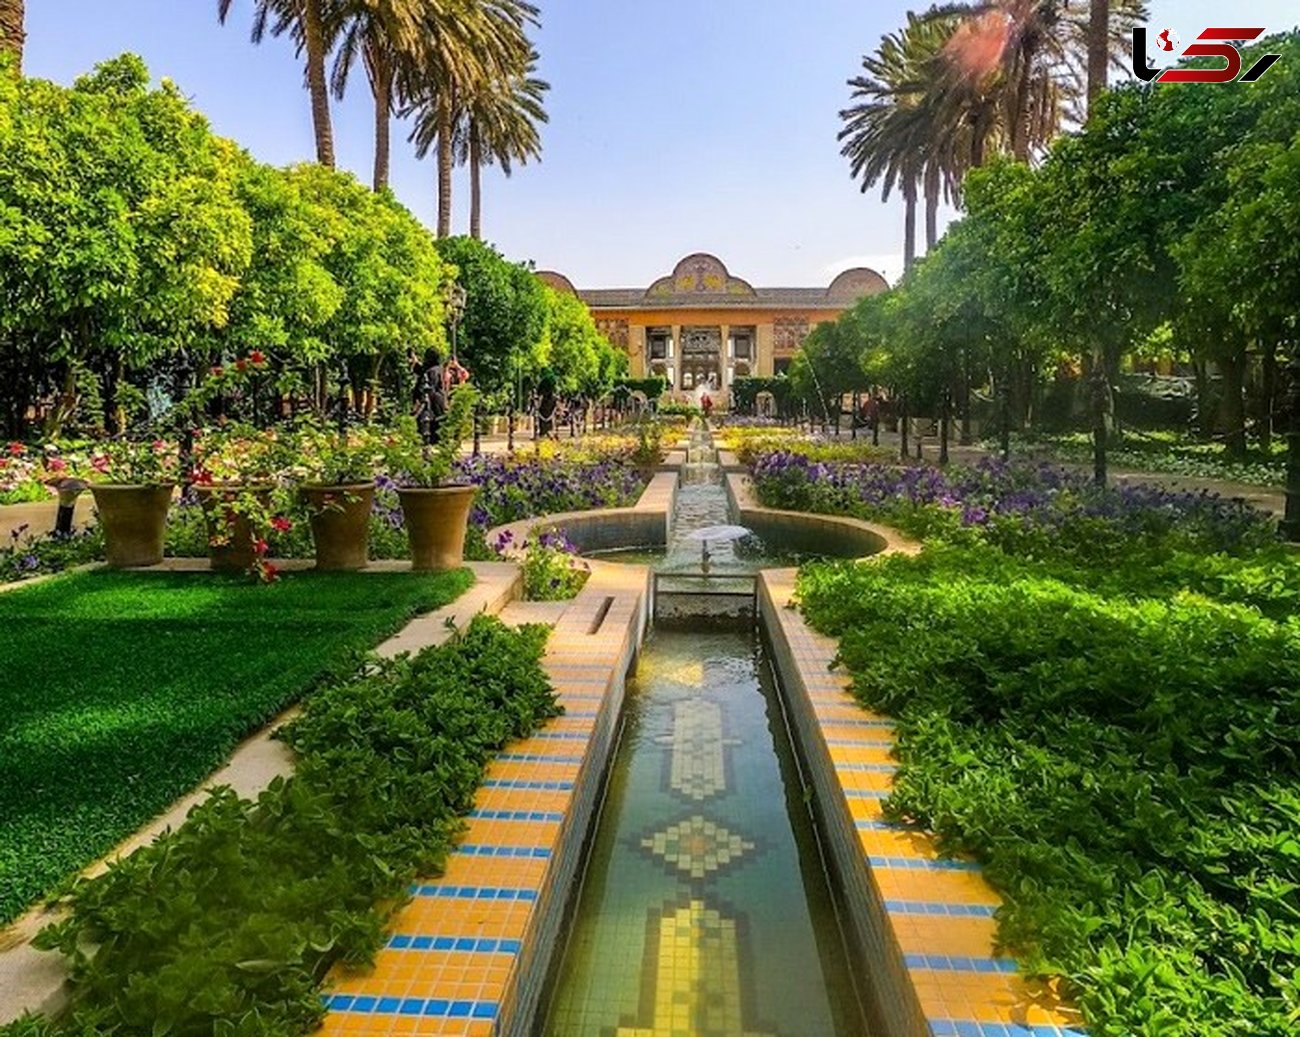 شیراز، شهر آرامش و زیبایی در قلب ایران